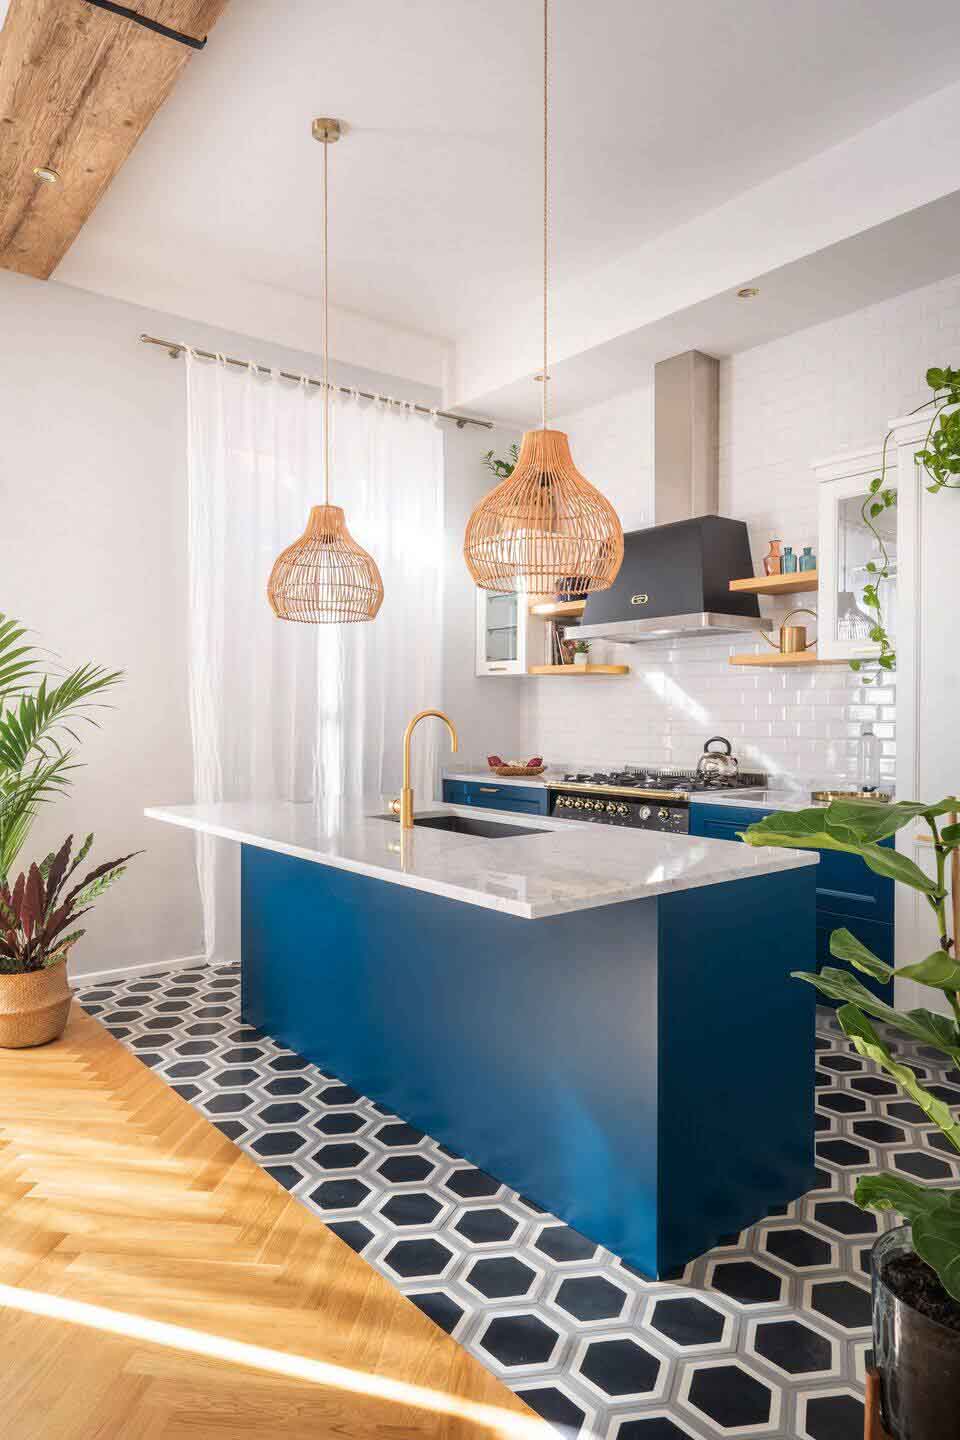 Khu vực bếp nổi bật với hệ tủ bếp màu xanh dương, phối cùng mặt bàn bếp làm từ đá marble trắng